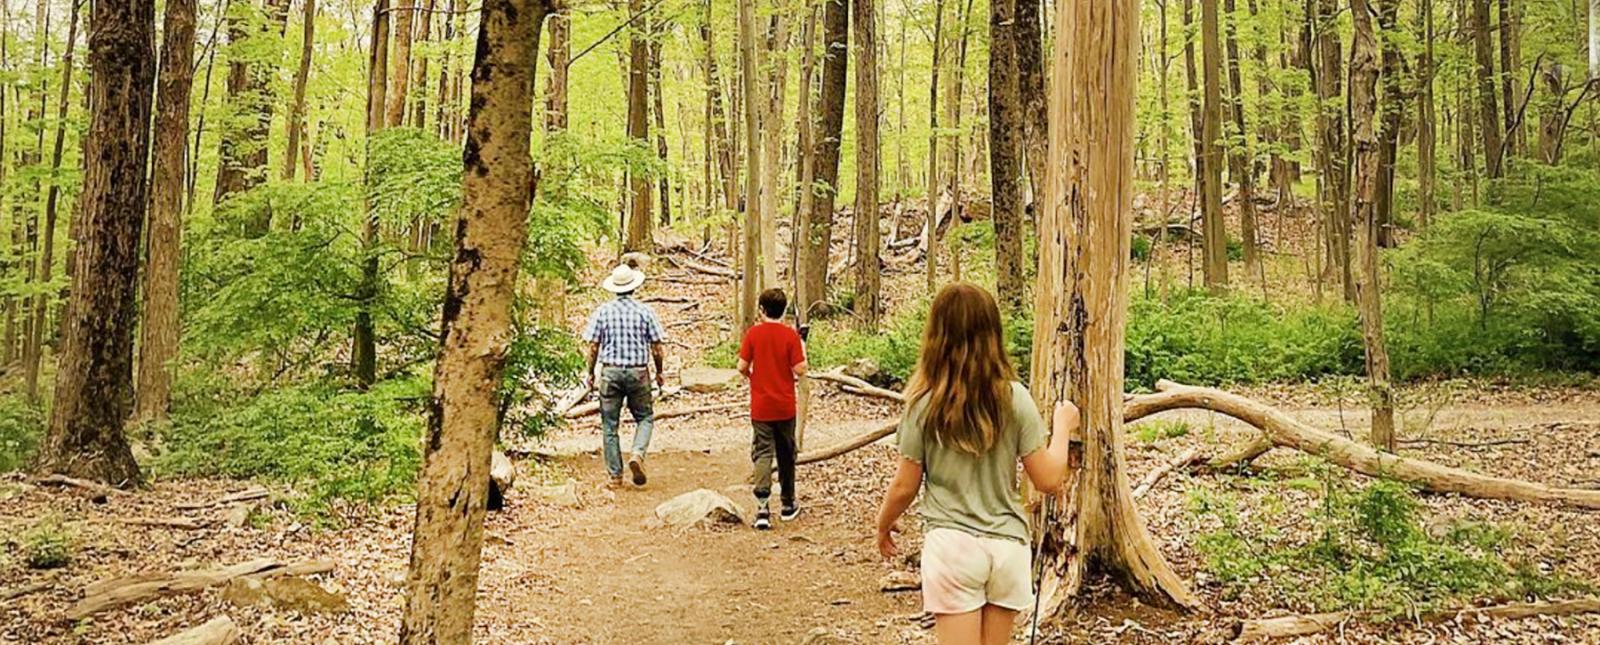 Una caminata familiar por el bosque (Instagram@justine_hoagland)